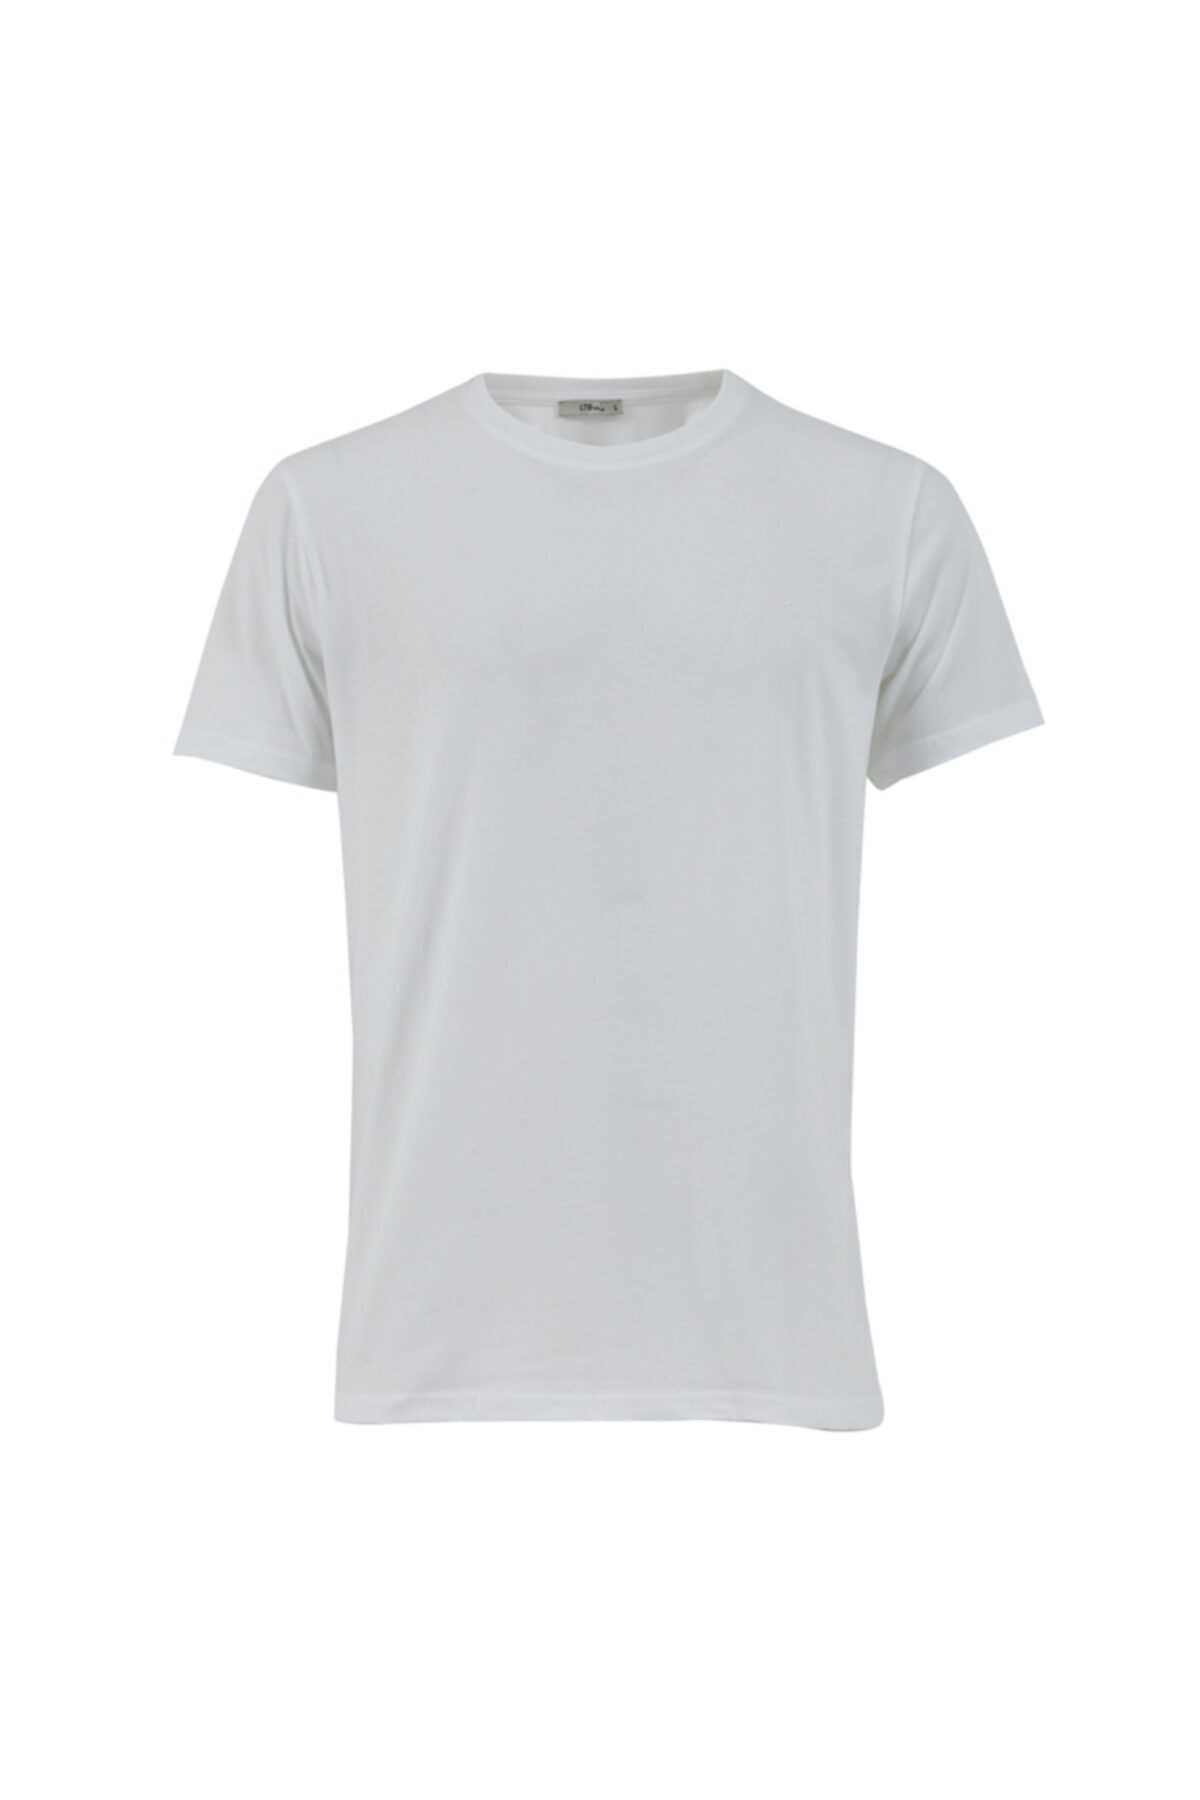 تی شرت مردانه خفن برند Ltb رنگ نقره ای کد ty54809362